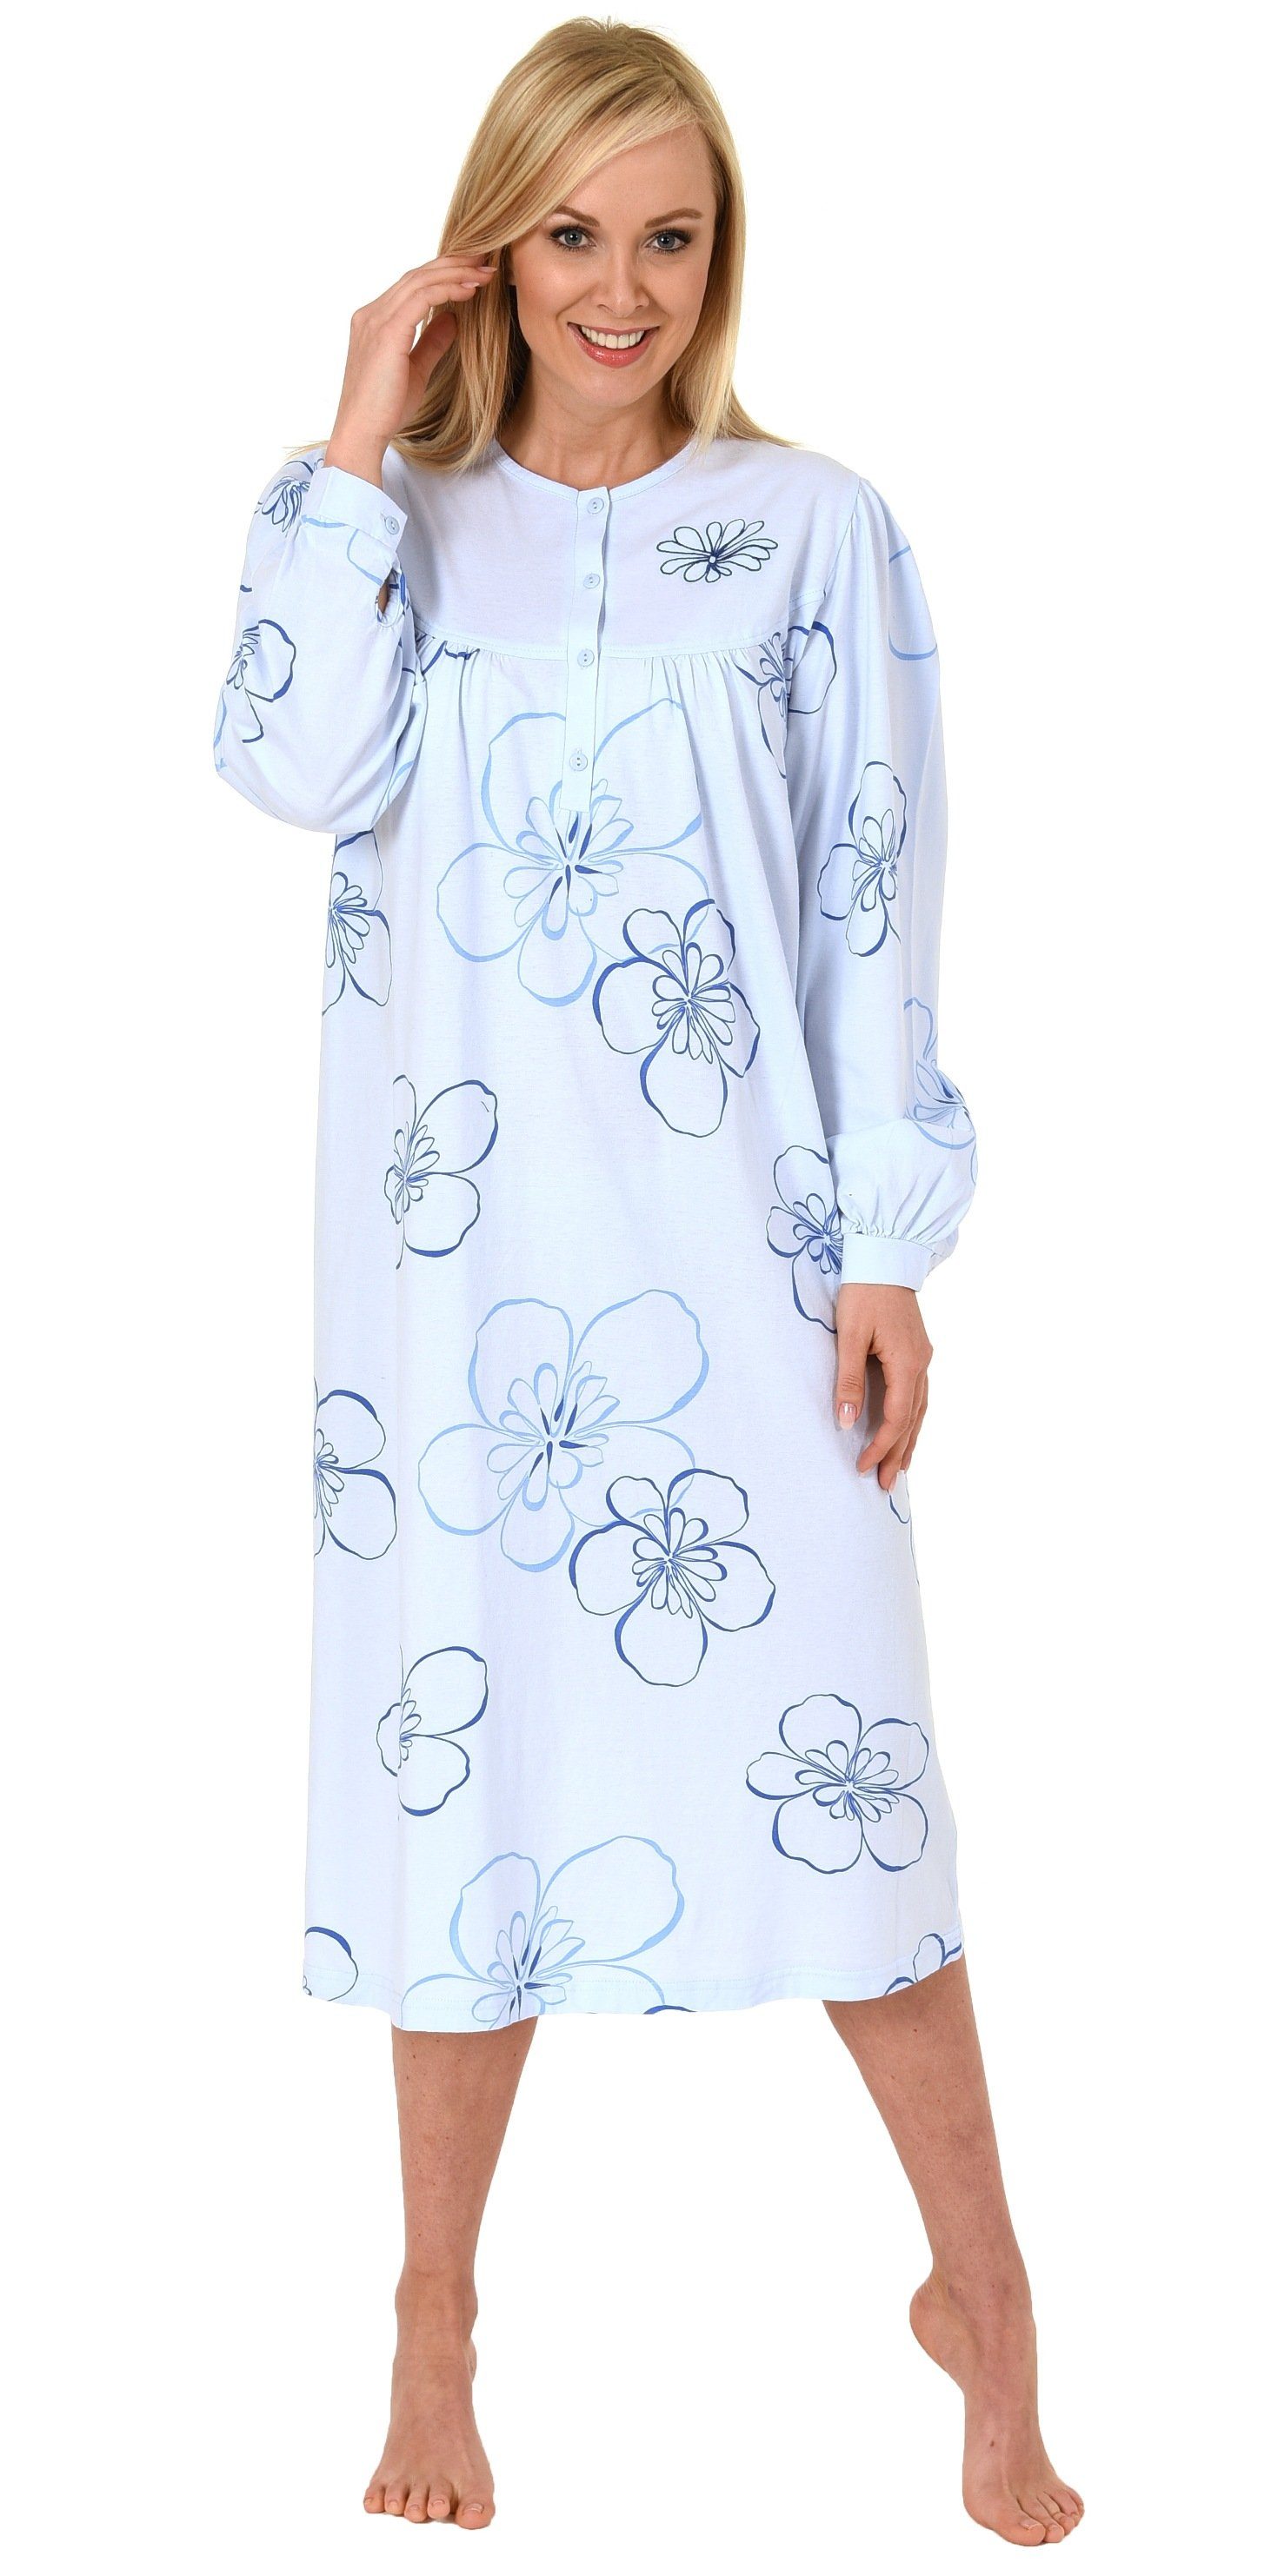 Normann Nachthemd Frauliches Damen Nachthemd,cm Länge, Knopfleiste am Hals - 202 314 hellblau